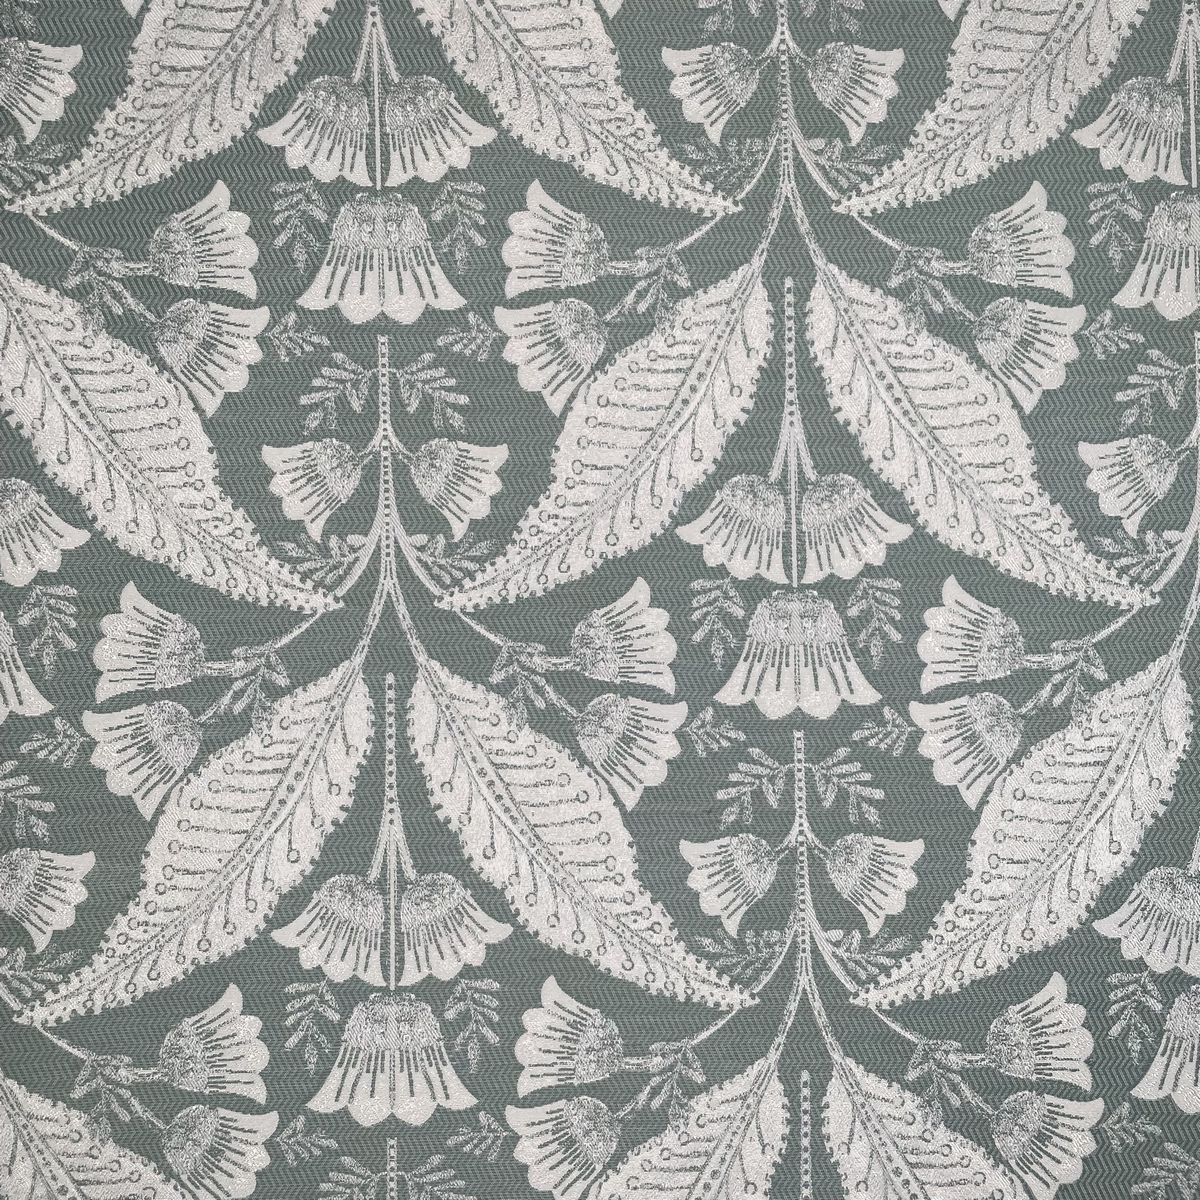 Burghley Fern Fabric by Chatham Glyn